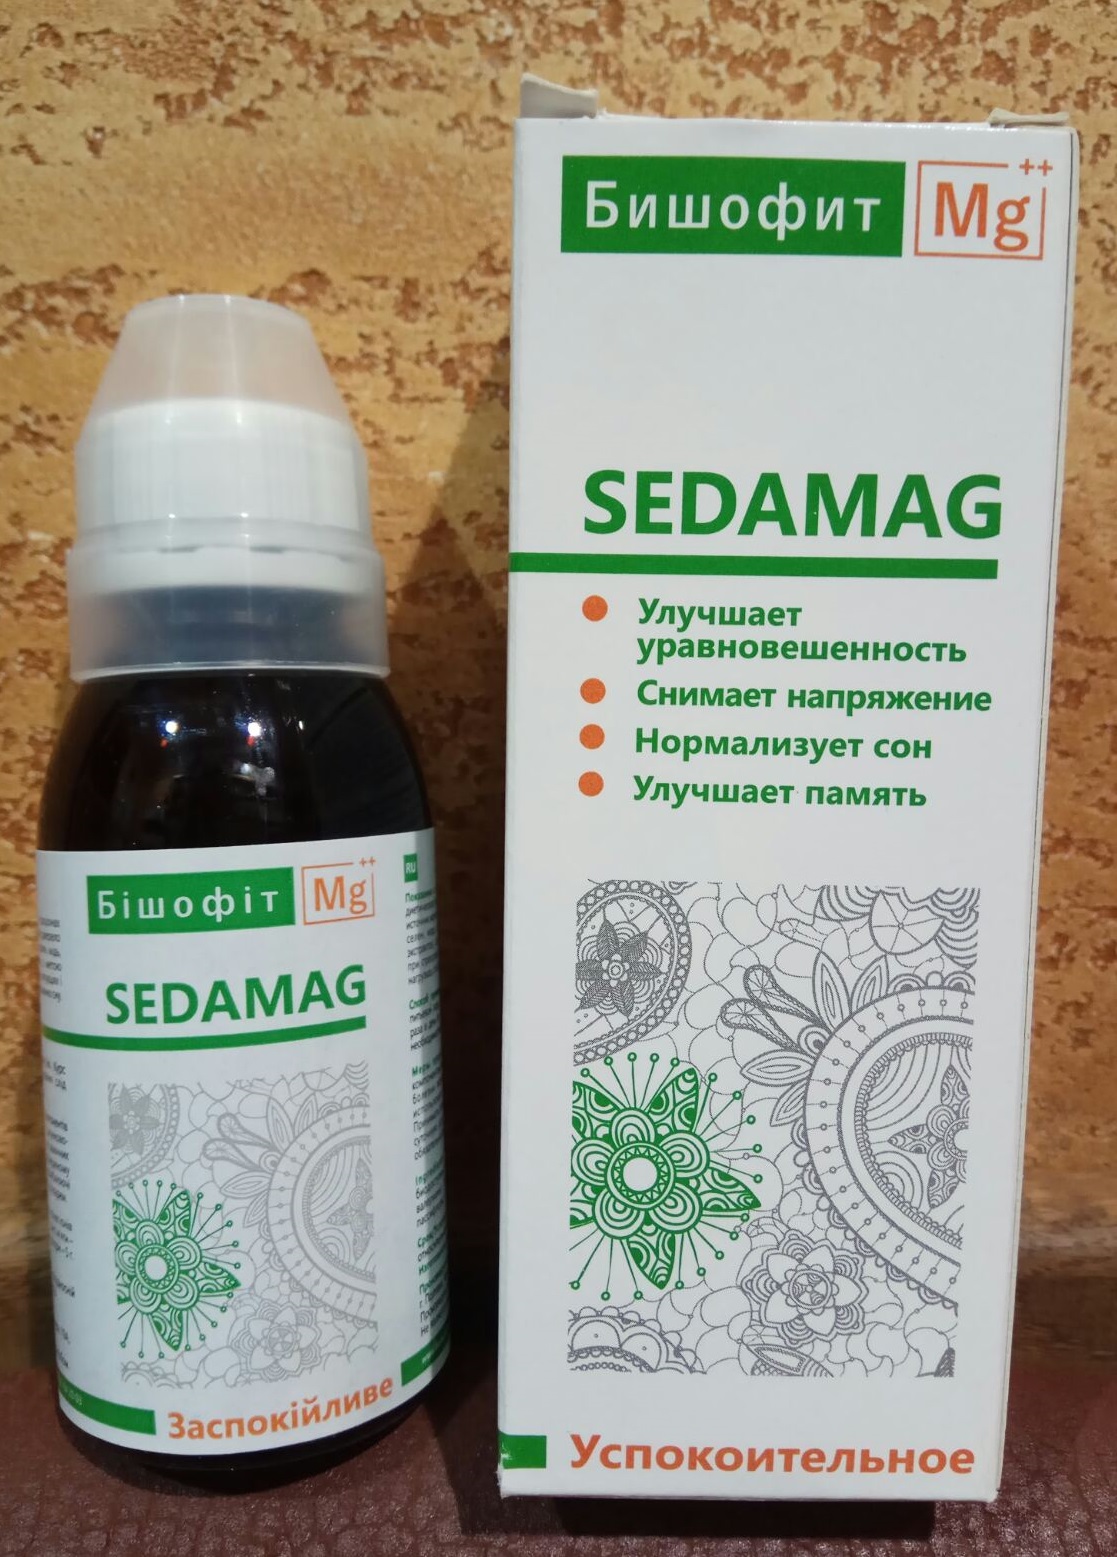 Бишофит питьевой СедаМаг Sedamag - успокоительное! источник магния, минералов, микроэлементов и фитоэкстрактов,100 мл.